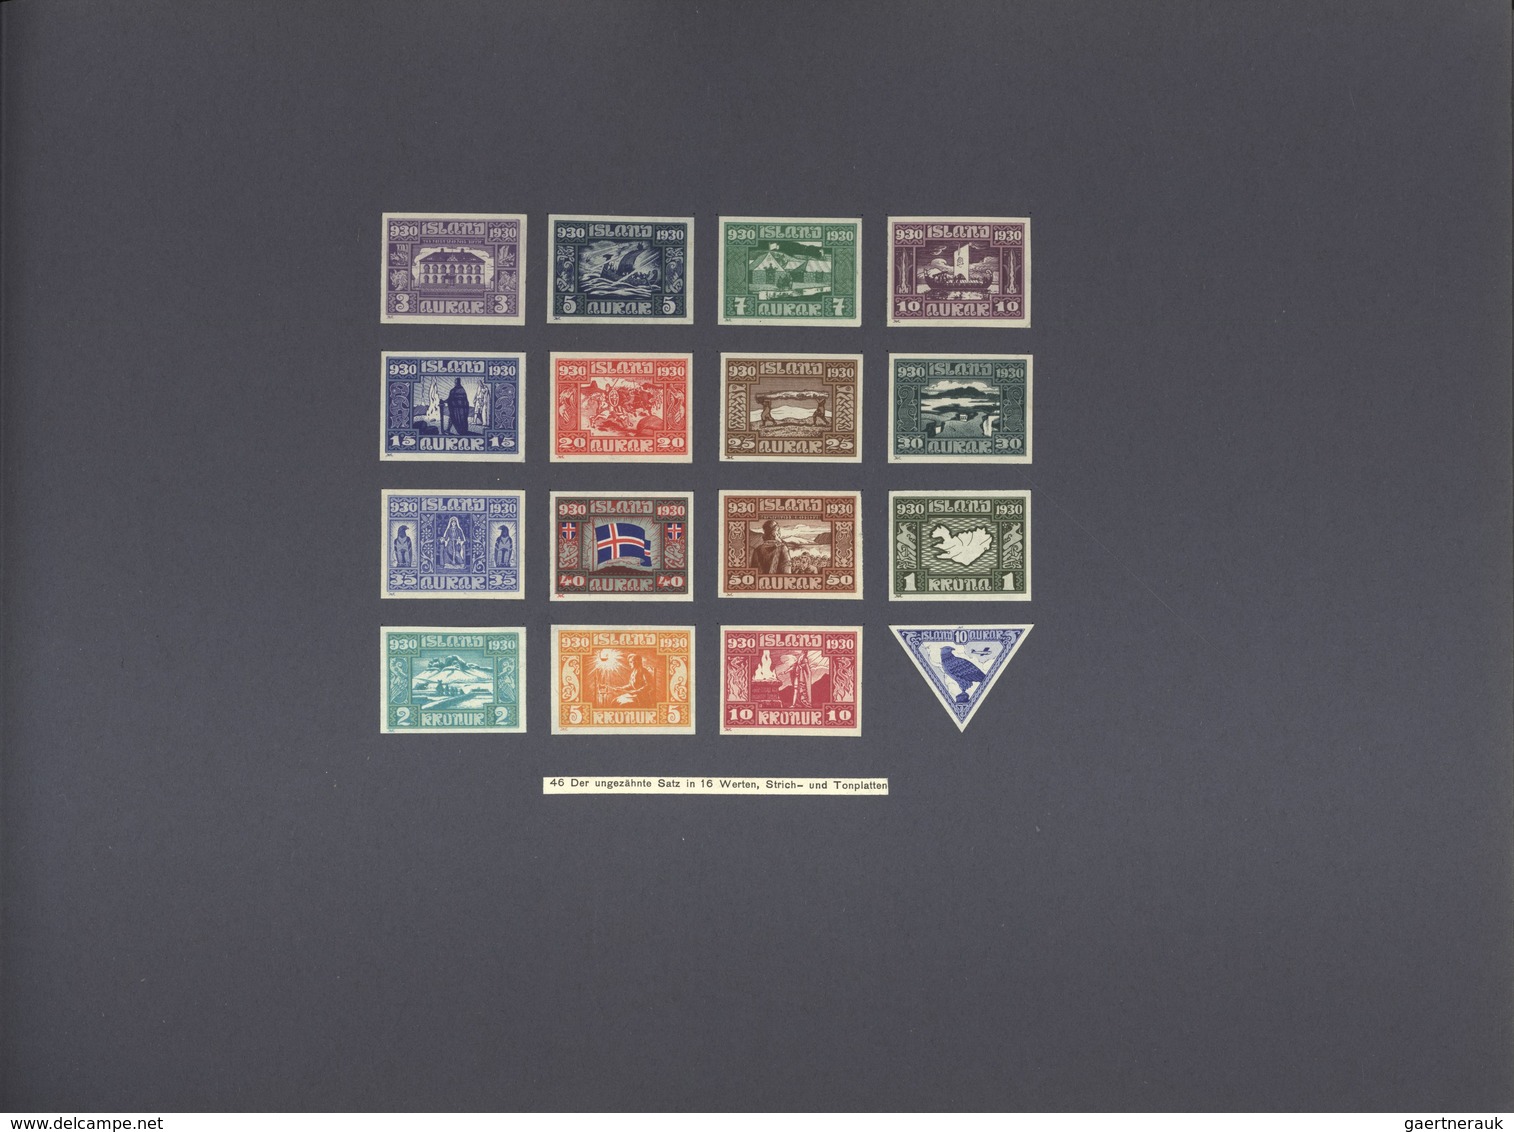 Island: 1930, Die Jubiläumsbriefmarken von Island 930-1930 / entworfen von Ludwig Hesshaimer / gedru